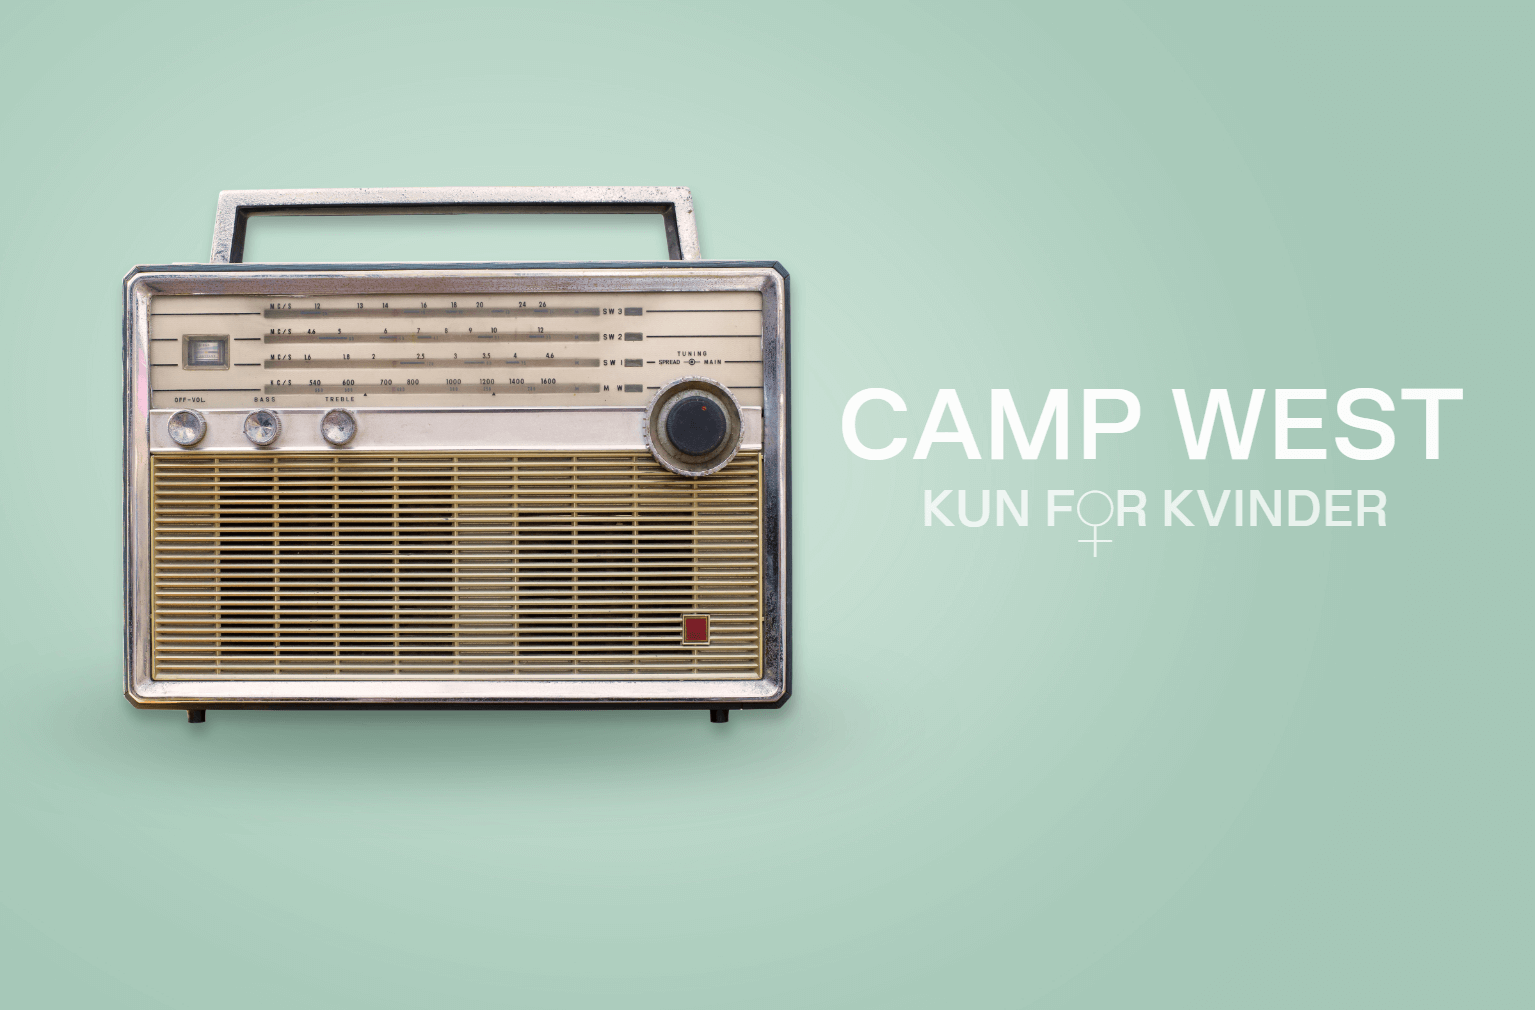 En gammel radio med ordene "Camp West" fremtrædende vist, perfekt til nostalgiske campingentusiaster og vintage radiosamlere.